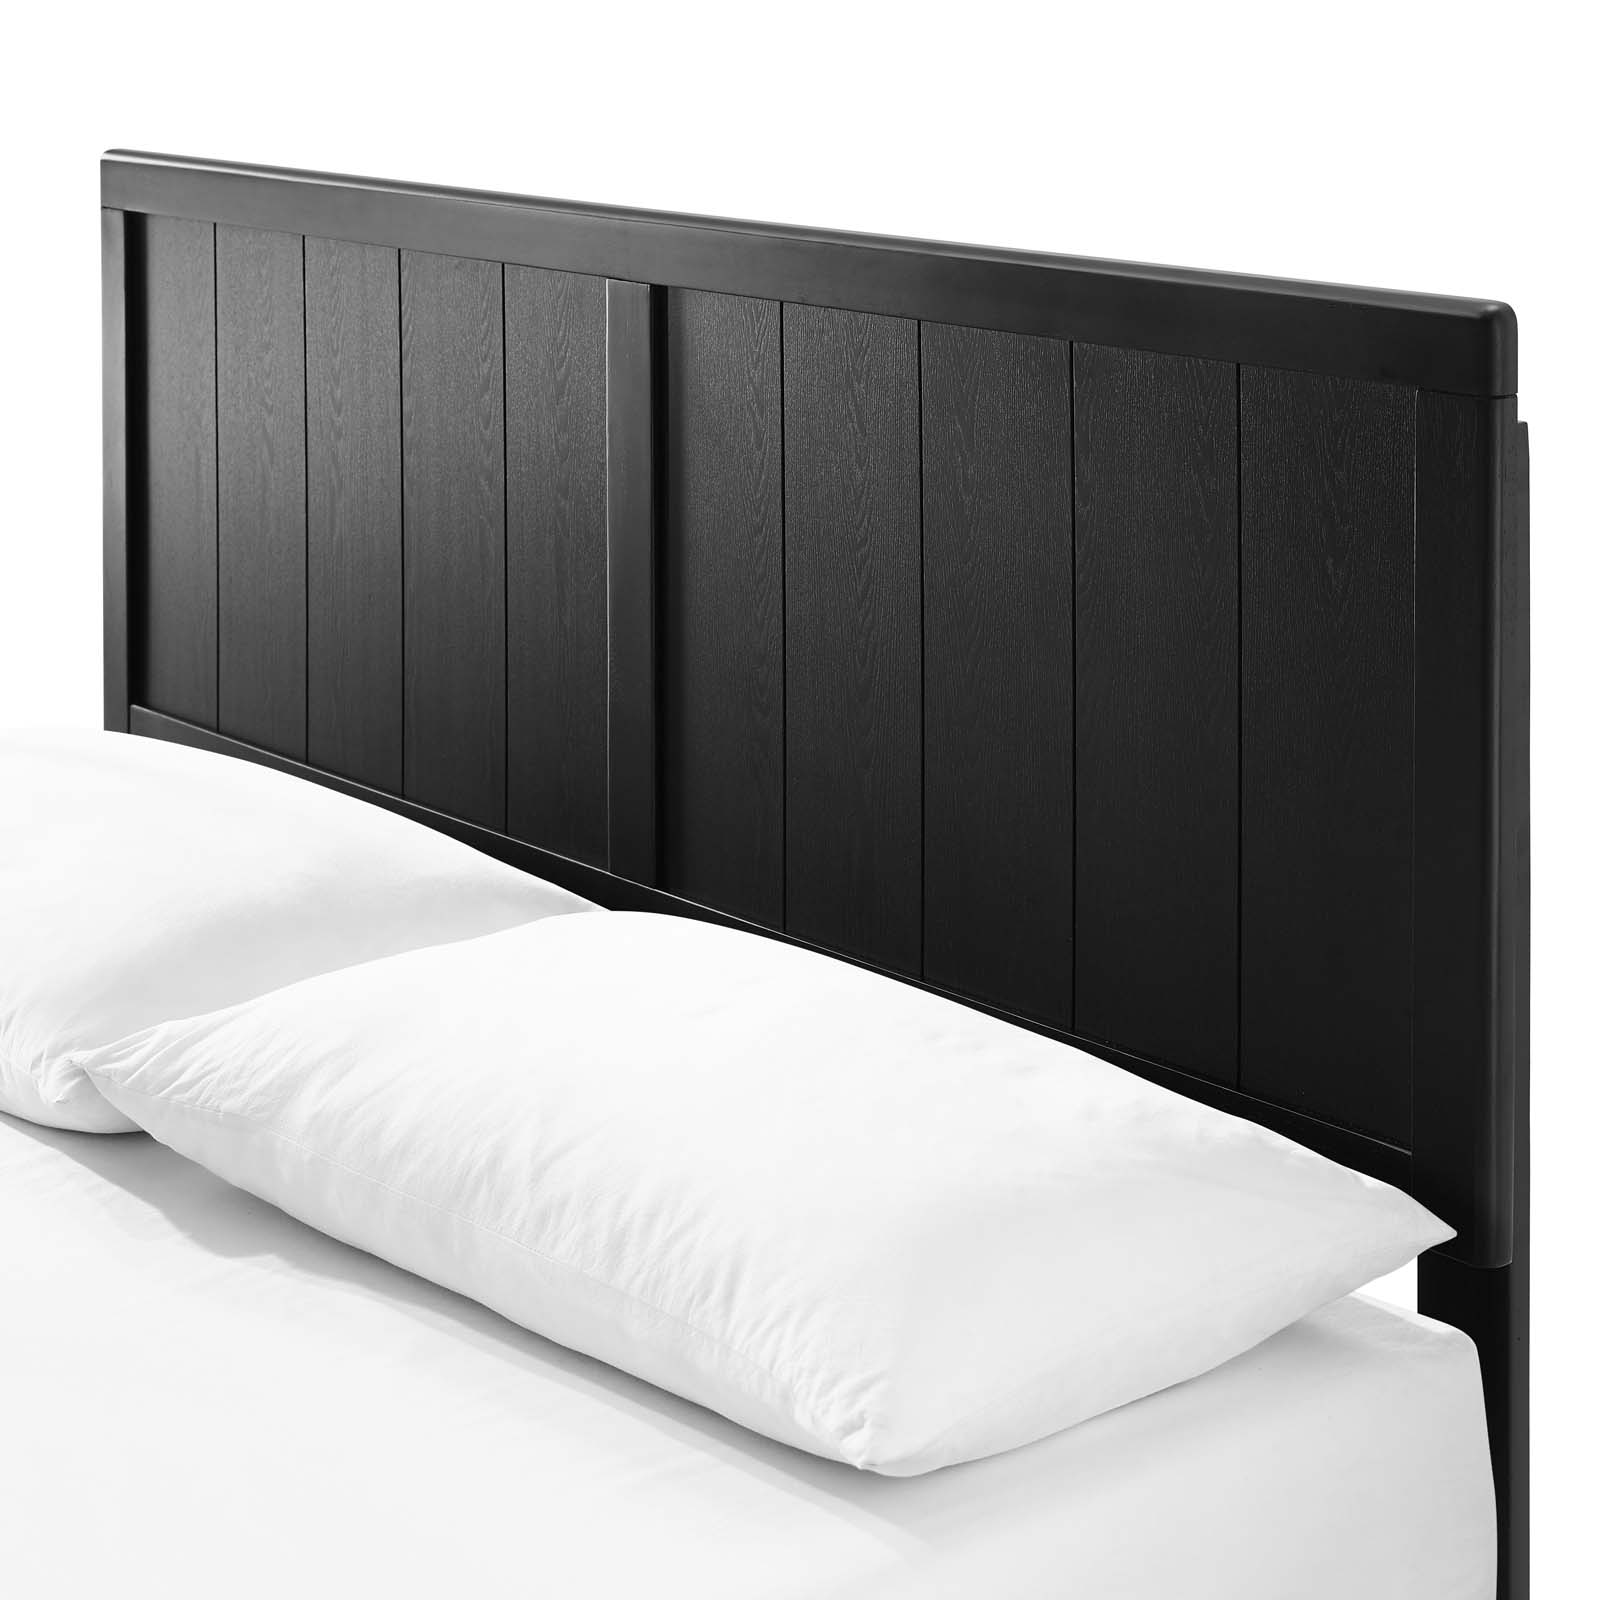 Platform Bed Frame, Full Size, Wood, Black, Modern Contemporary Urban Design, Bedroom Master Guest Suite - image 5 of 10